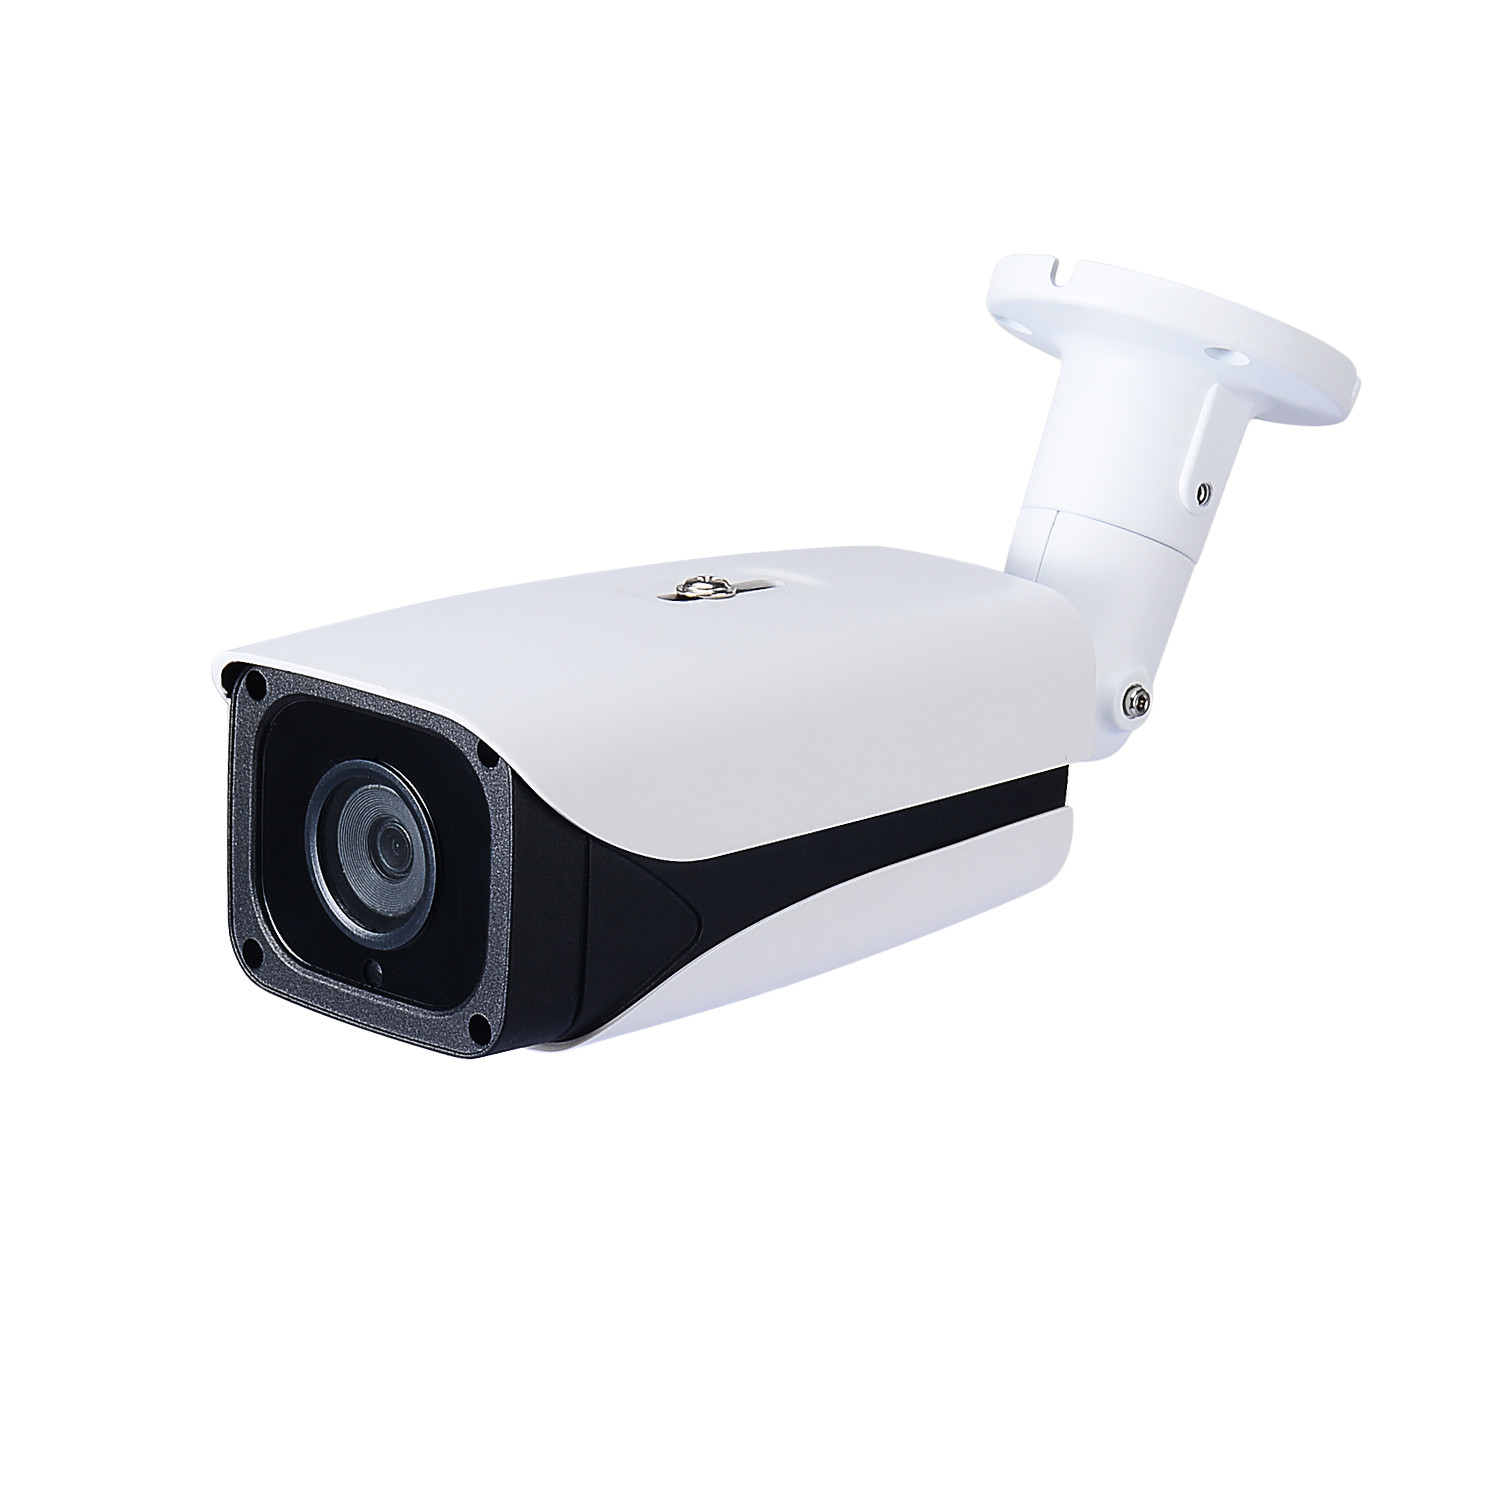 Камера 20 1 3 8. IP камера Owler 1.3МП fd20. Видеокамера AHD/TVI/CVI/CVBS 5мп уличная цилиндрическая ip66 (2.8-12мм). IP видеокамера Owler i230d 4g.